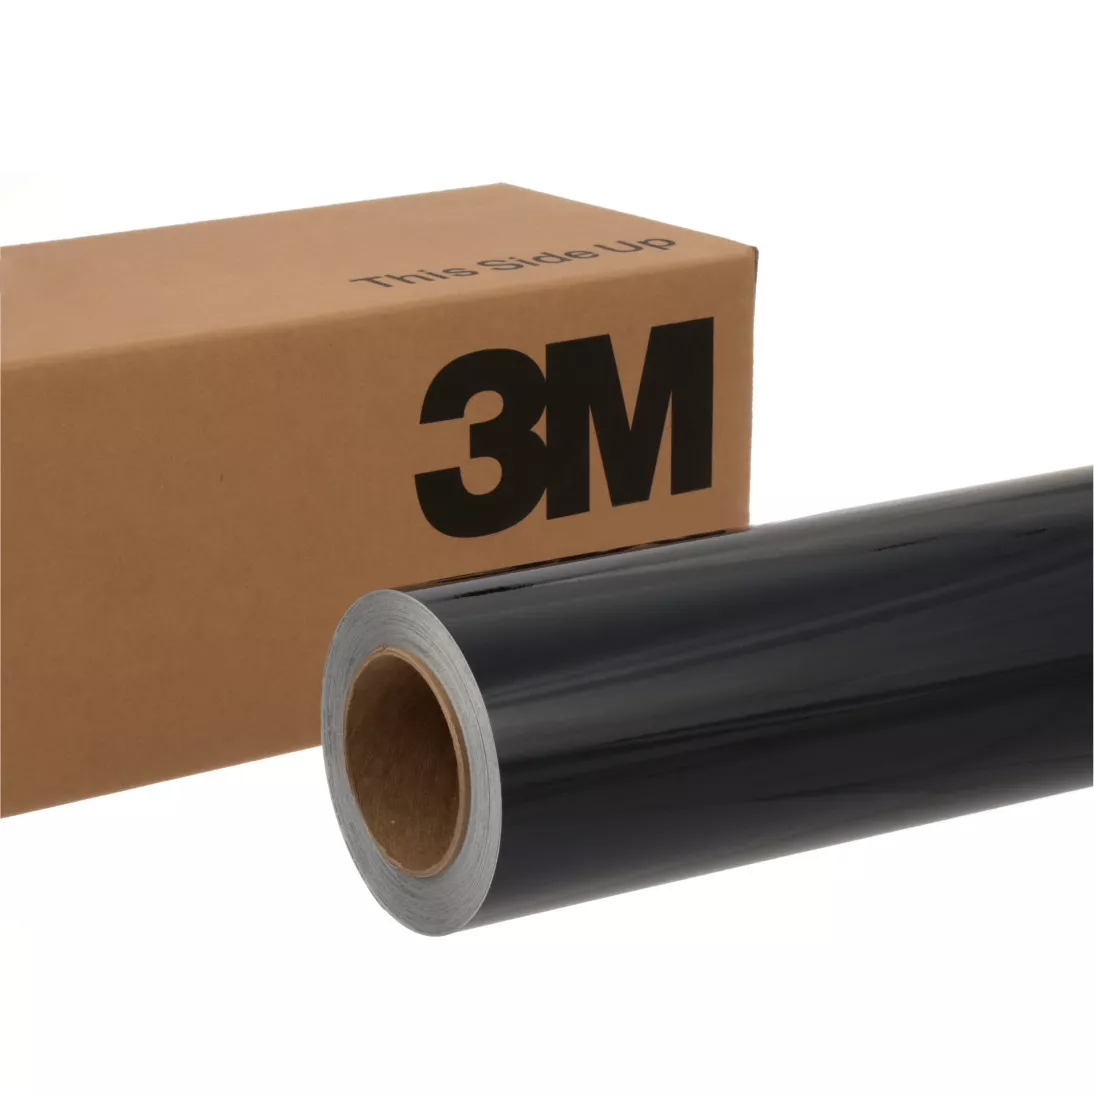 3M™ Wrap Film 2080-G127, Boat Blue, 60 in x 25 yd, 1 Roll/Case